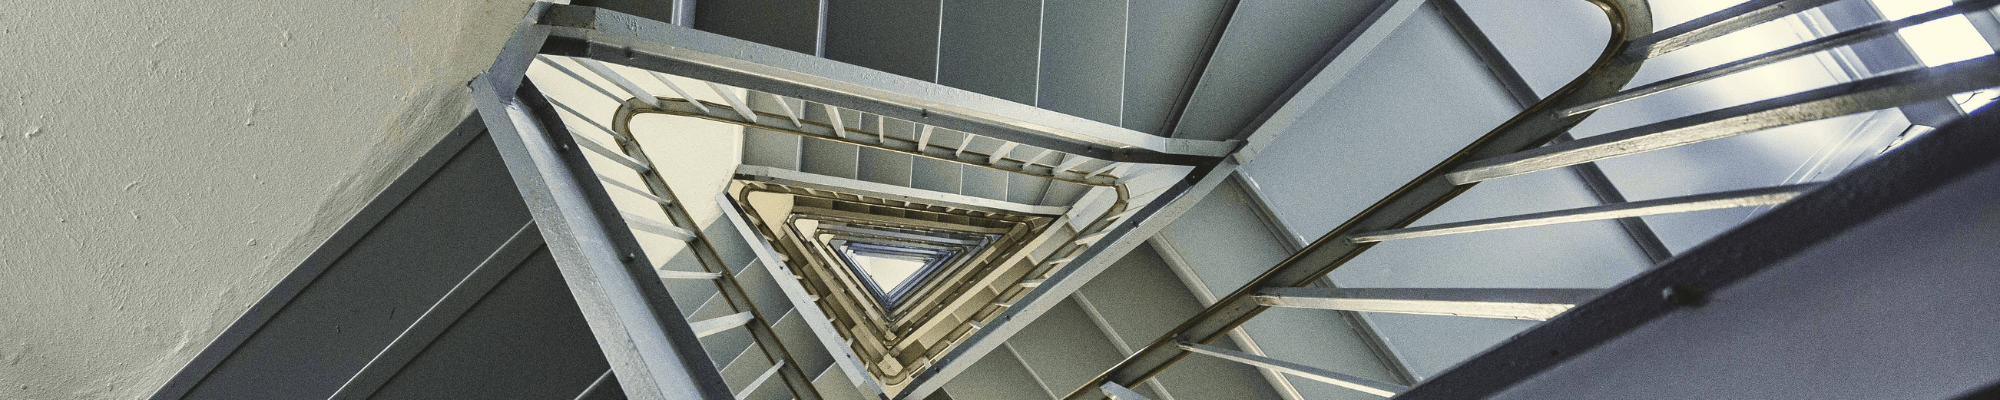 industrial metal stairs